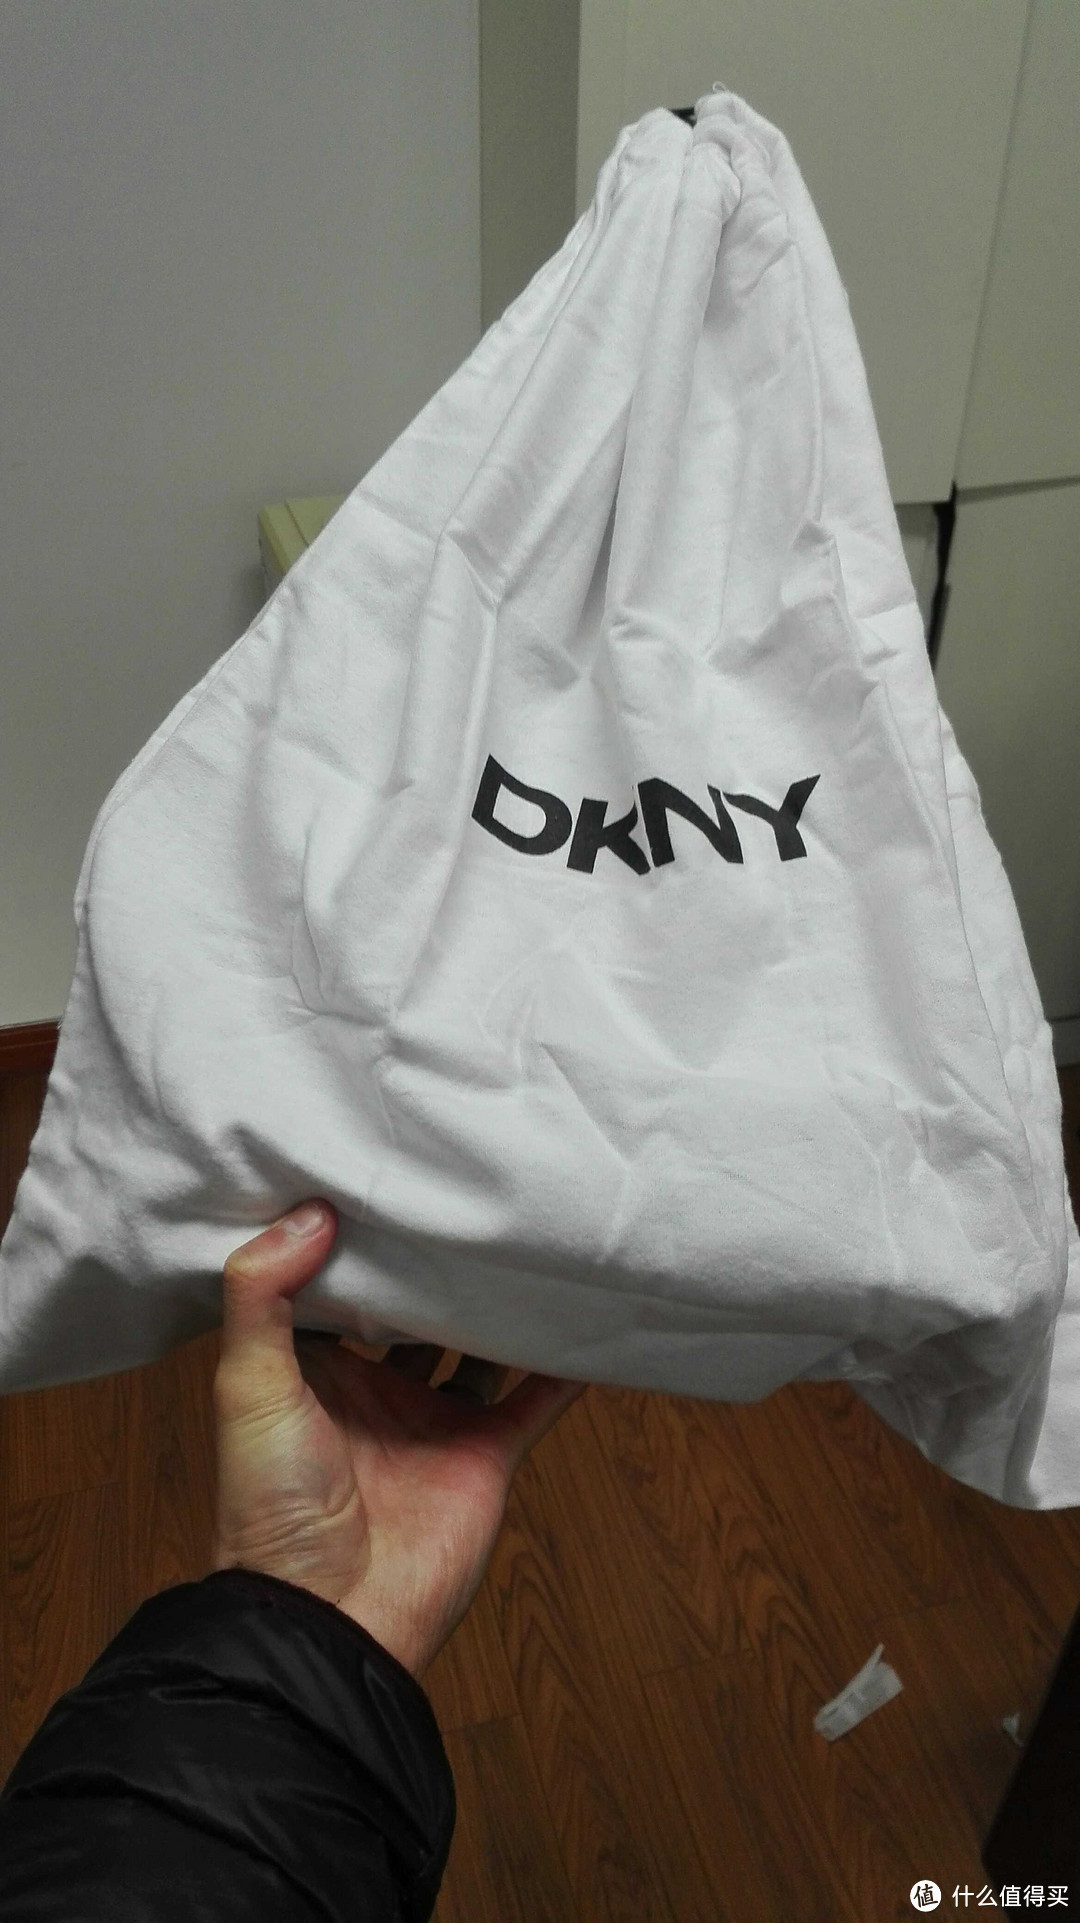 大家好，我叒叒来晒包了——DKNY Bryant Park 贝壳包 开箱